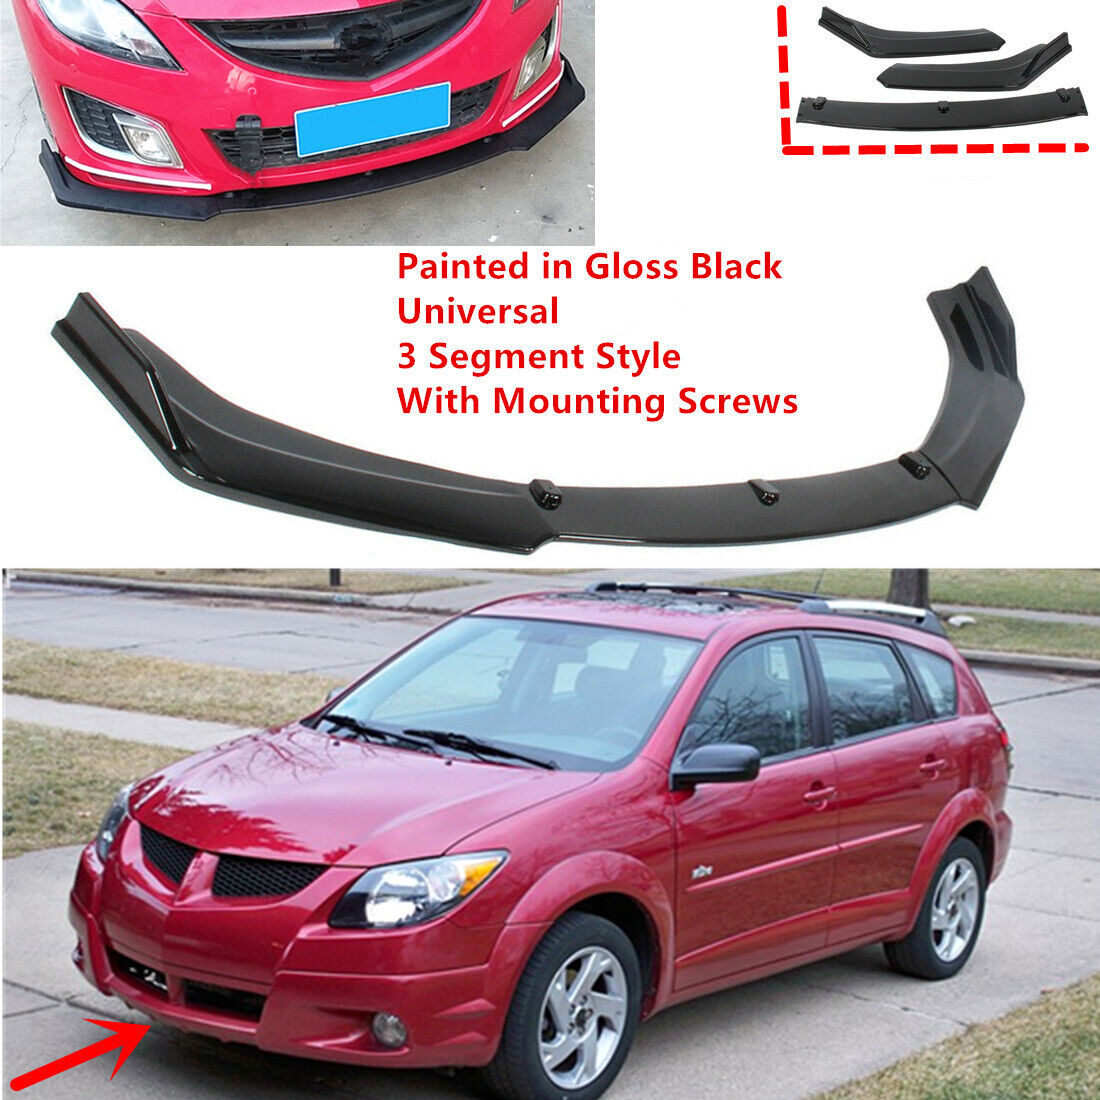 Add-on Universal Fit For Pontiac Vibe 2003-2004 Front Lower Lip Spoiler  Splitter | eBay